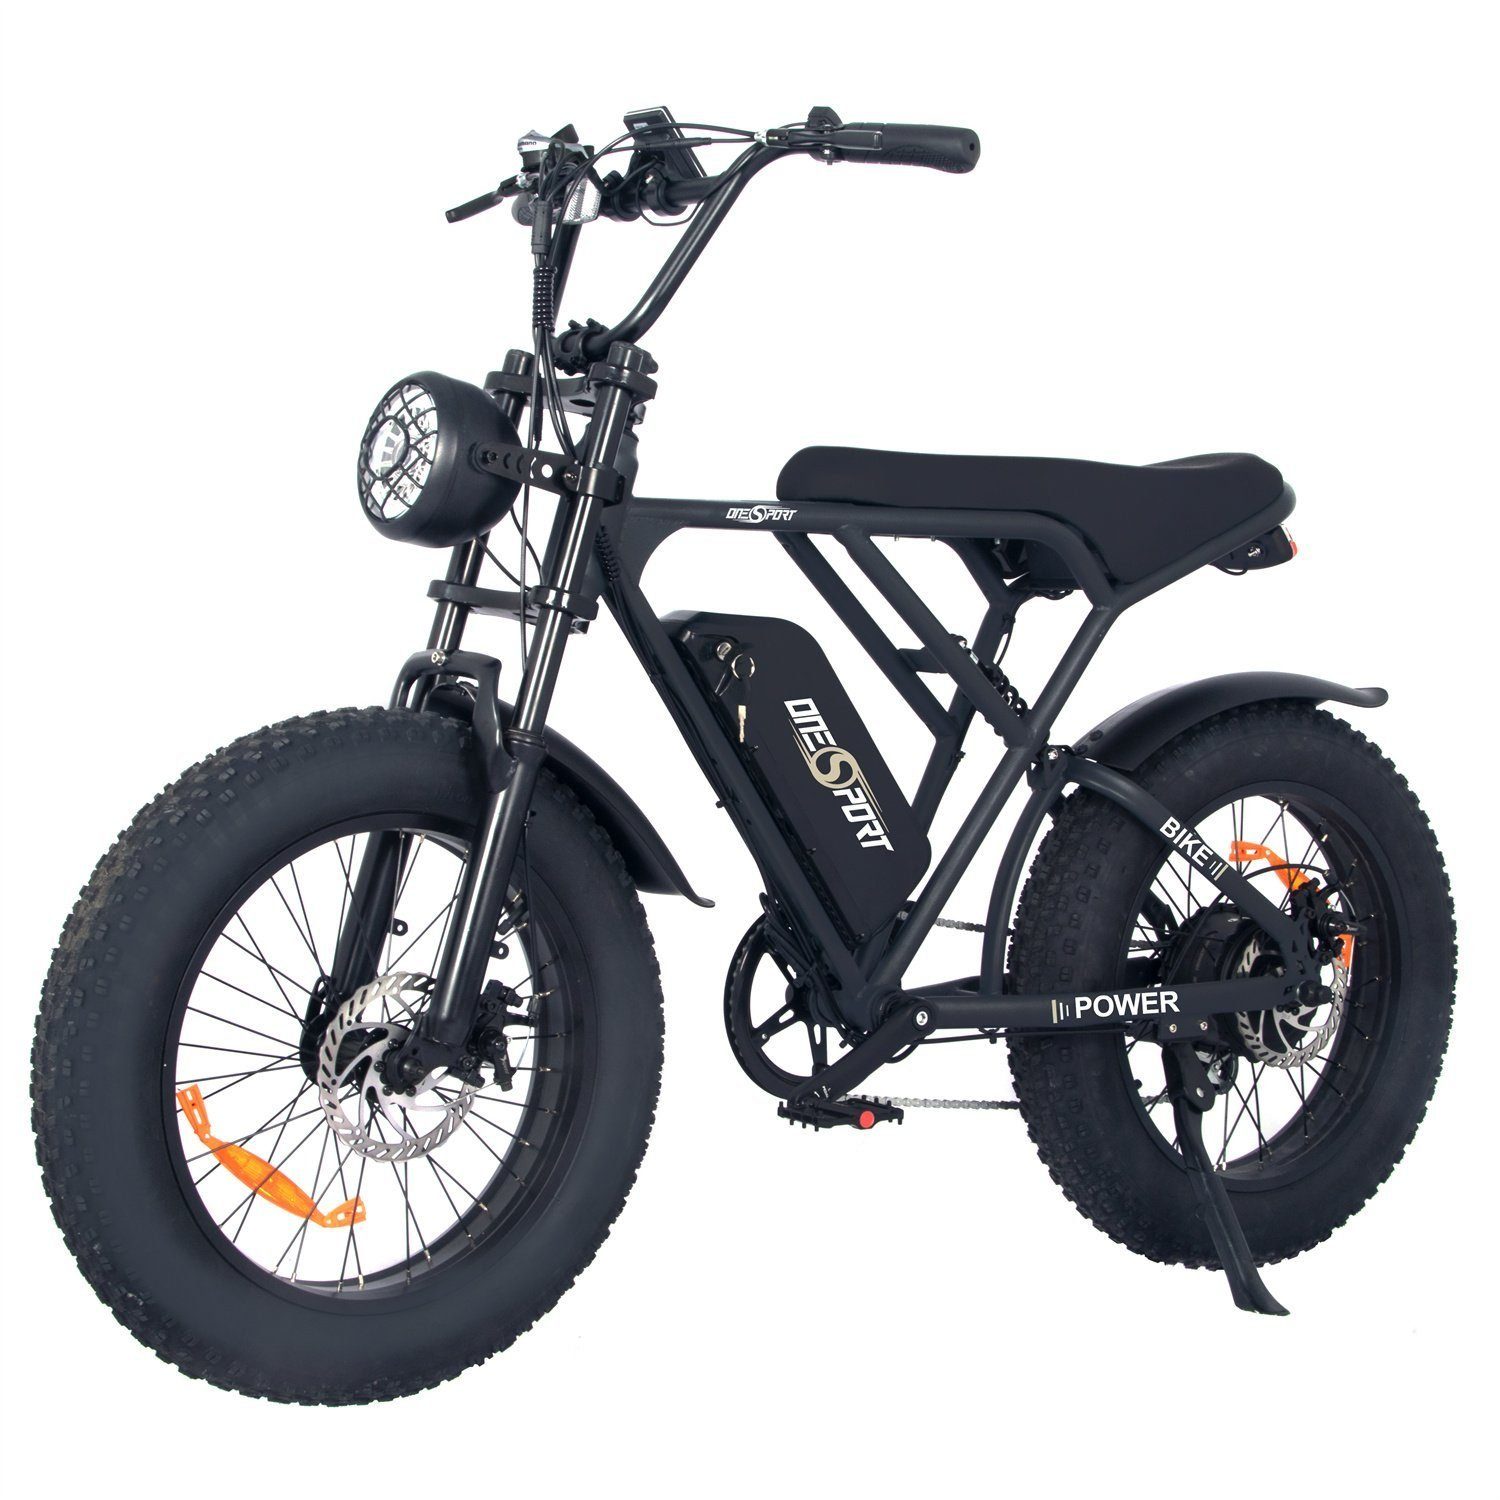 Fangqi E-Bike 20Zoll E-bike, Shimano 7-Gang,48V 816Wh,max 25km/h, Heckmotor, (Optionaler Gashebel: Nach dem Einbau des Gashebels kann ein rein elektrischer Modus erreicht werden, Fahrmodi: Pedal-Modus und Power-Assist-Modus)